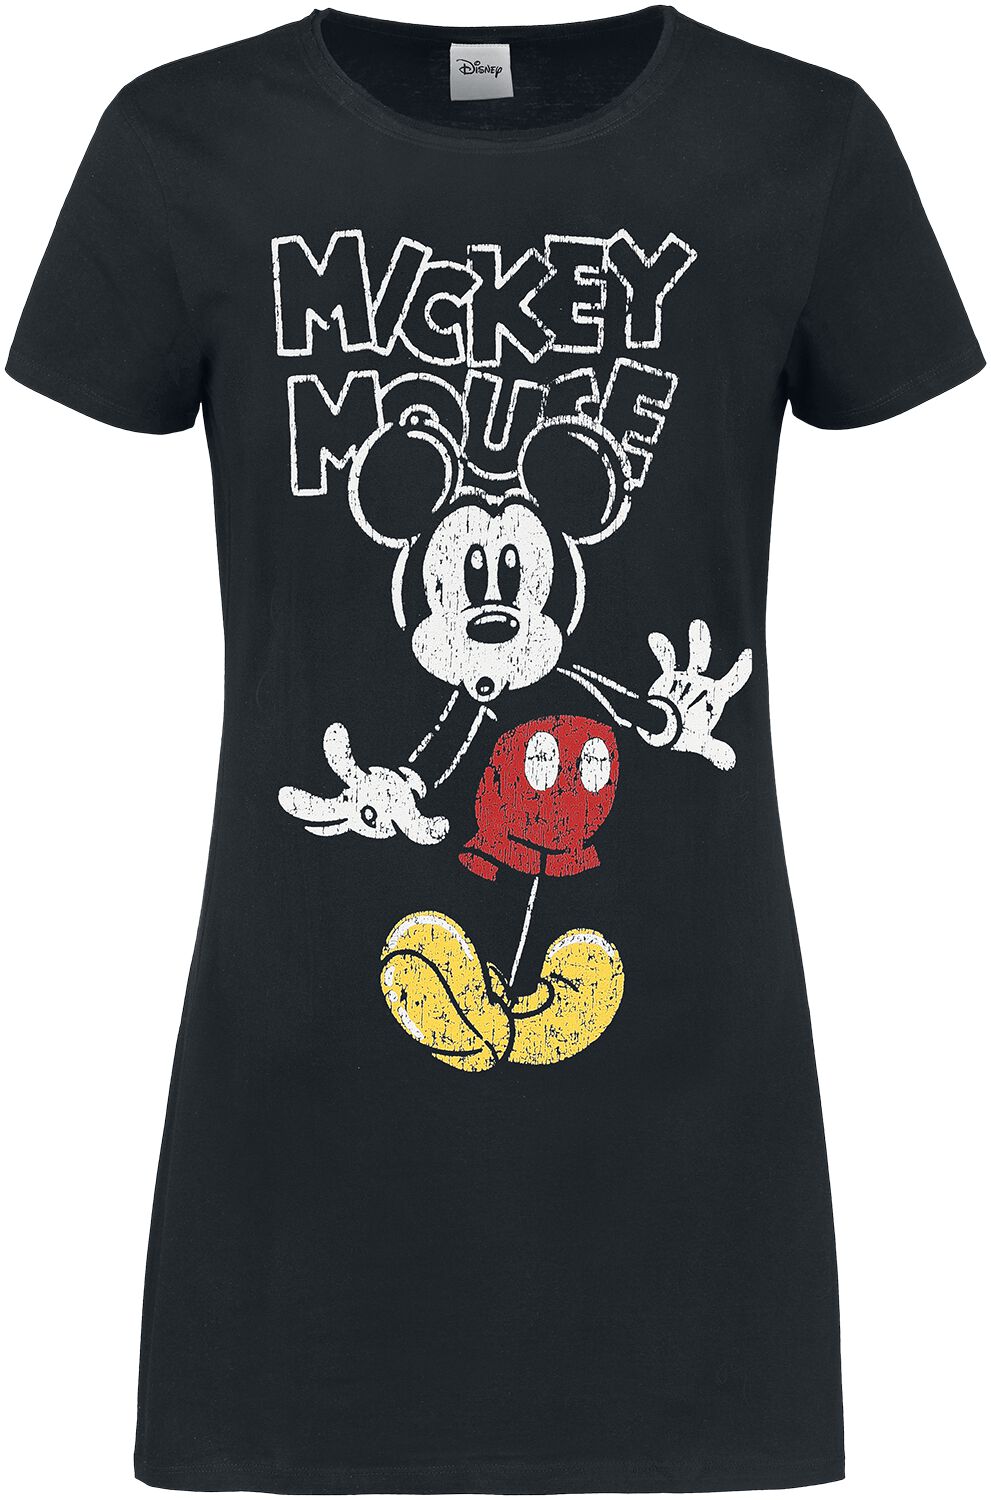 Mickey Mouse - Disney Kurzes Kleid - S bis XL - für Damen - Größe M - schwarz  - EMP exklusives Merchandise!